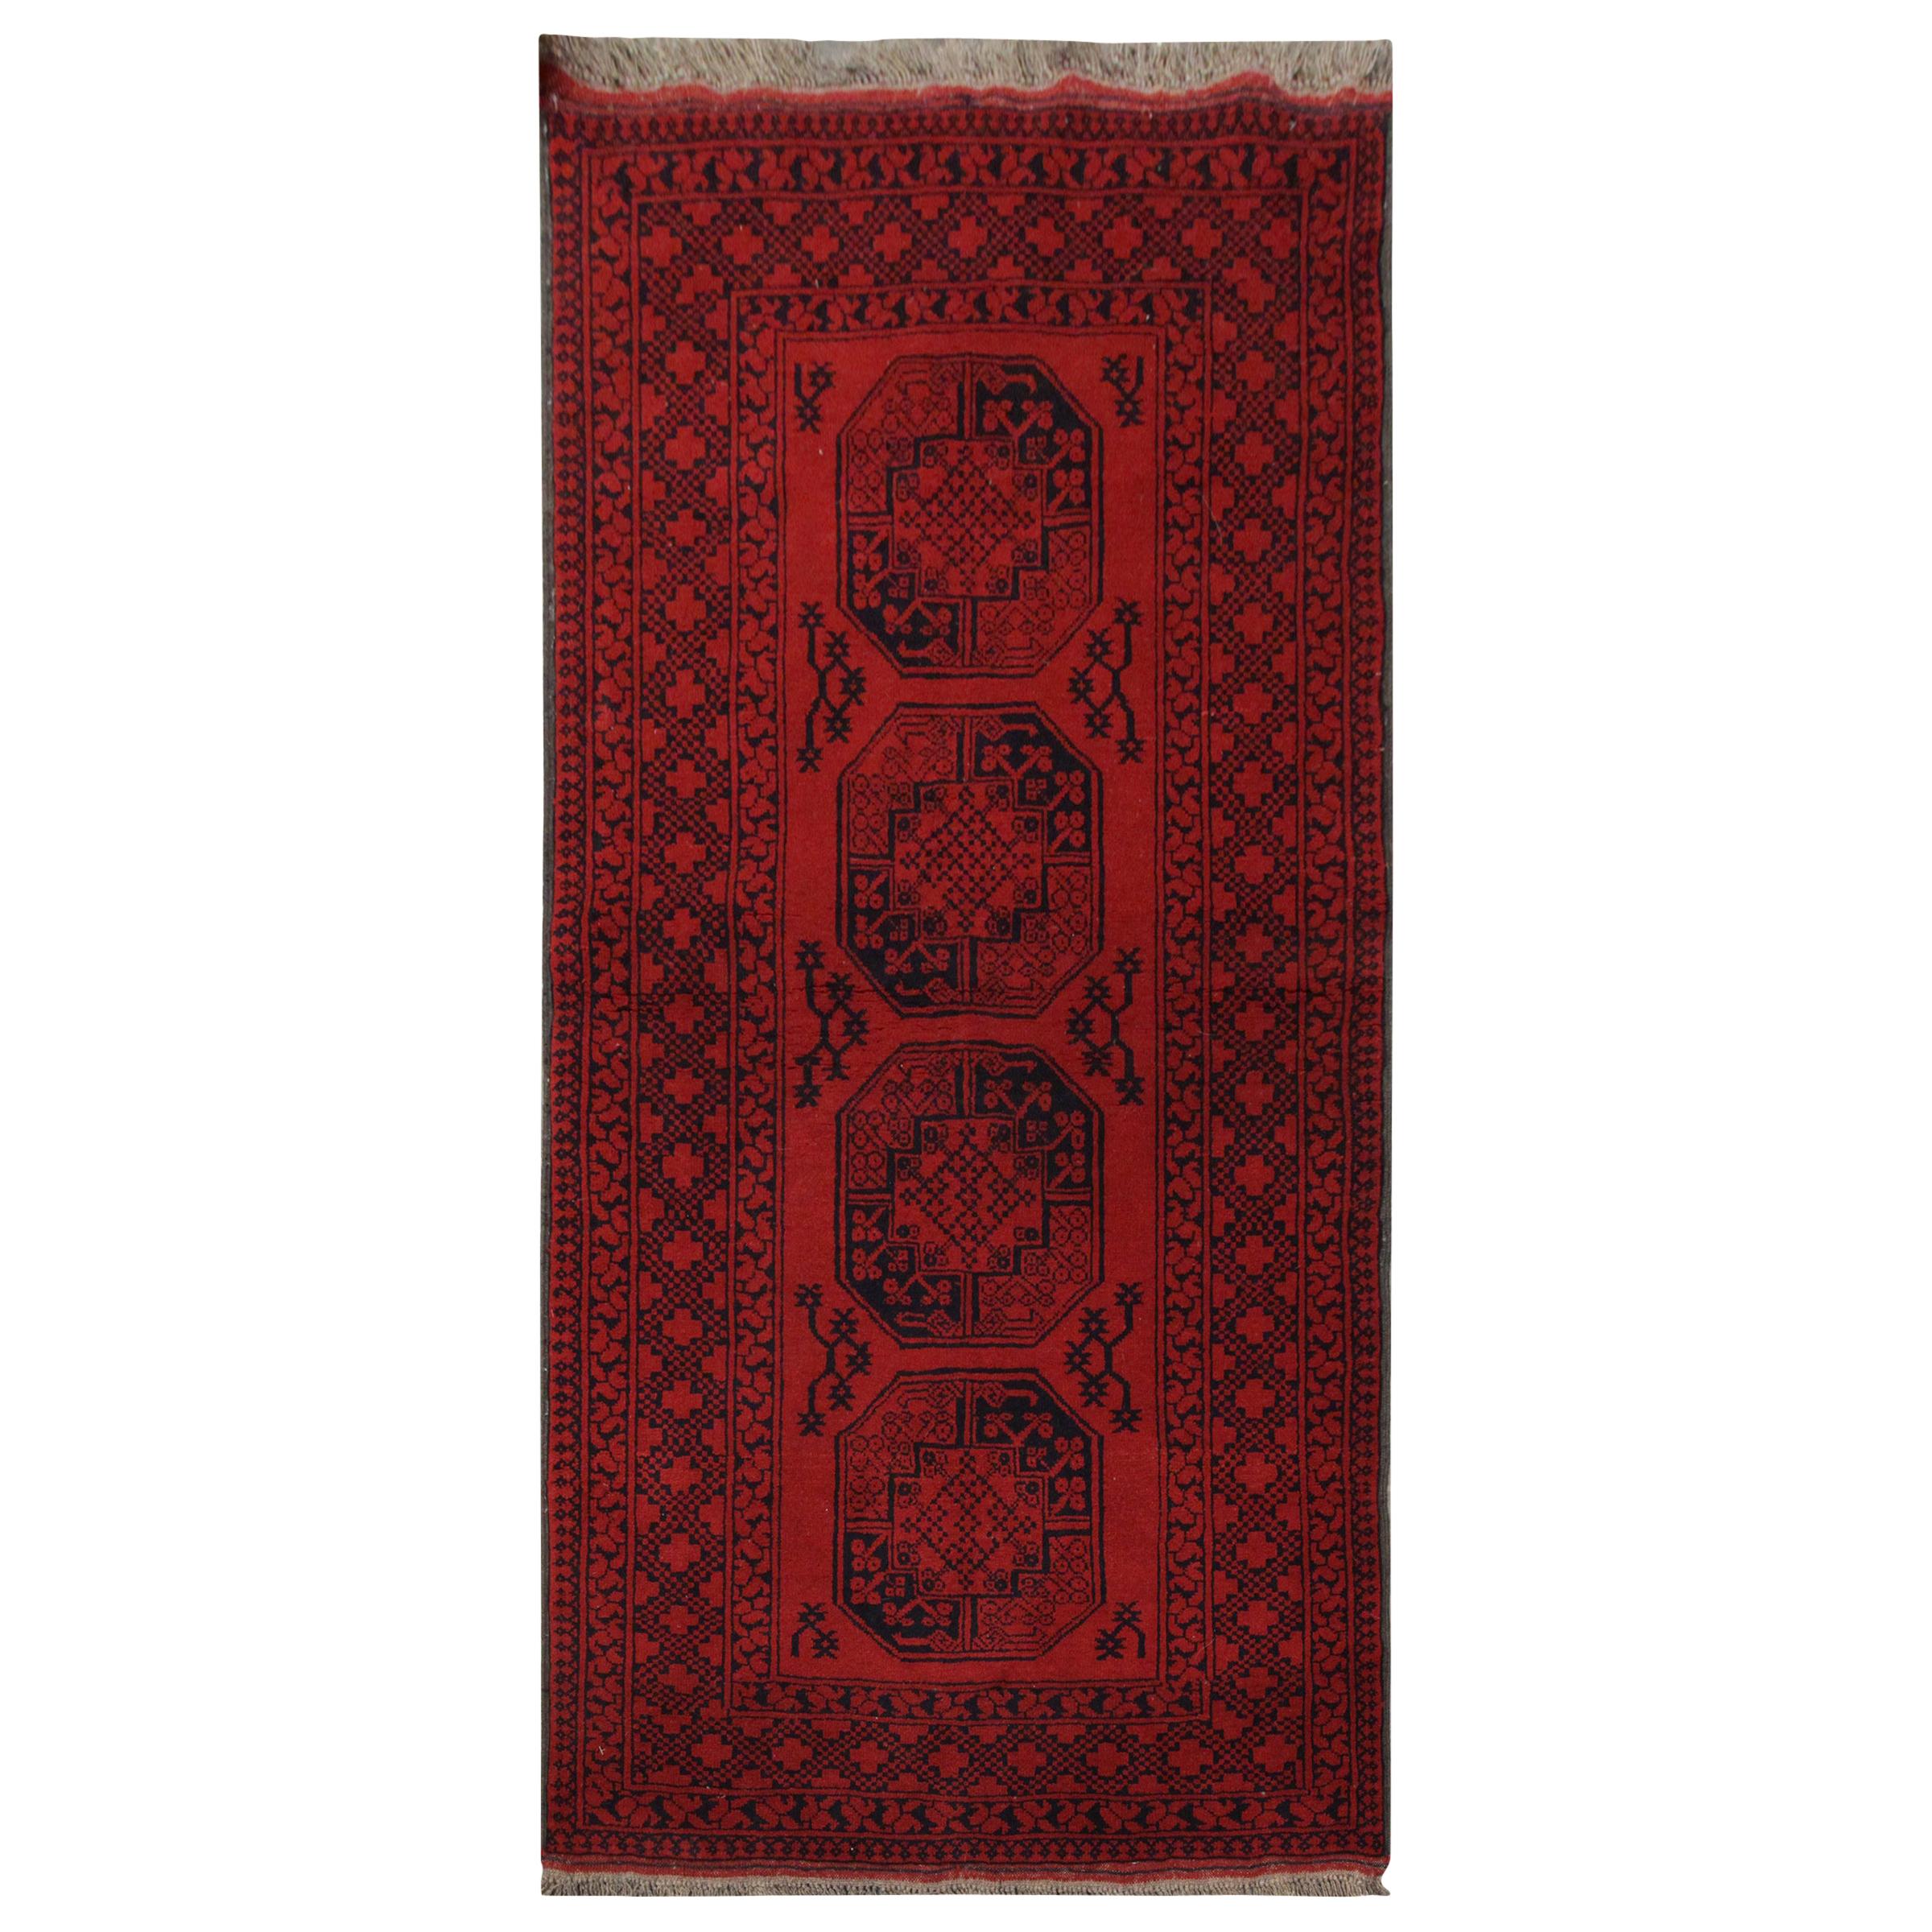 Handmade Carpet Vintage Afghan Oriental Rug, Rustic Red Living Room Rug